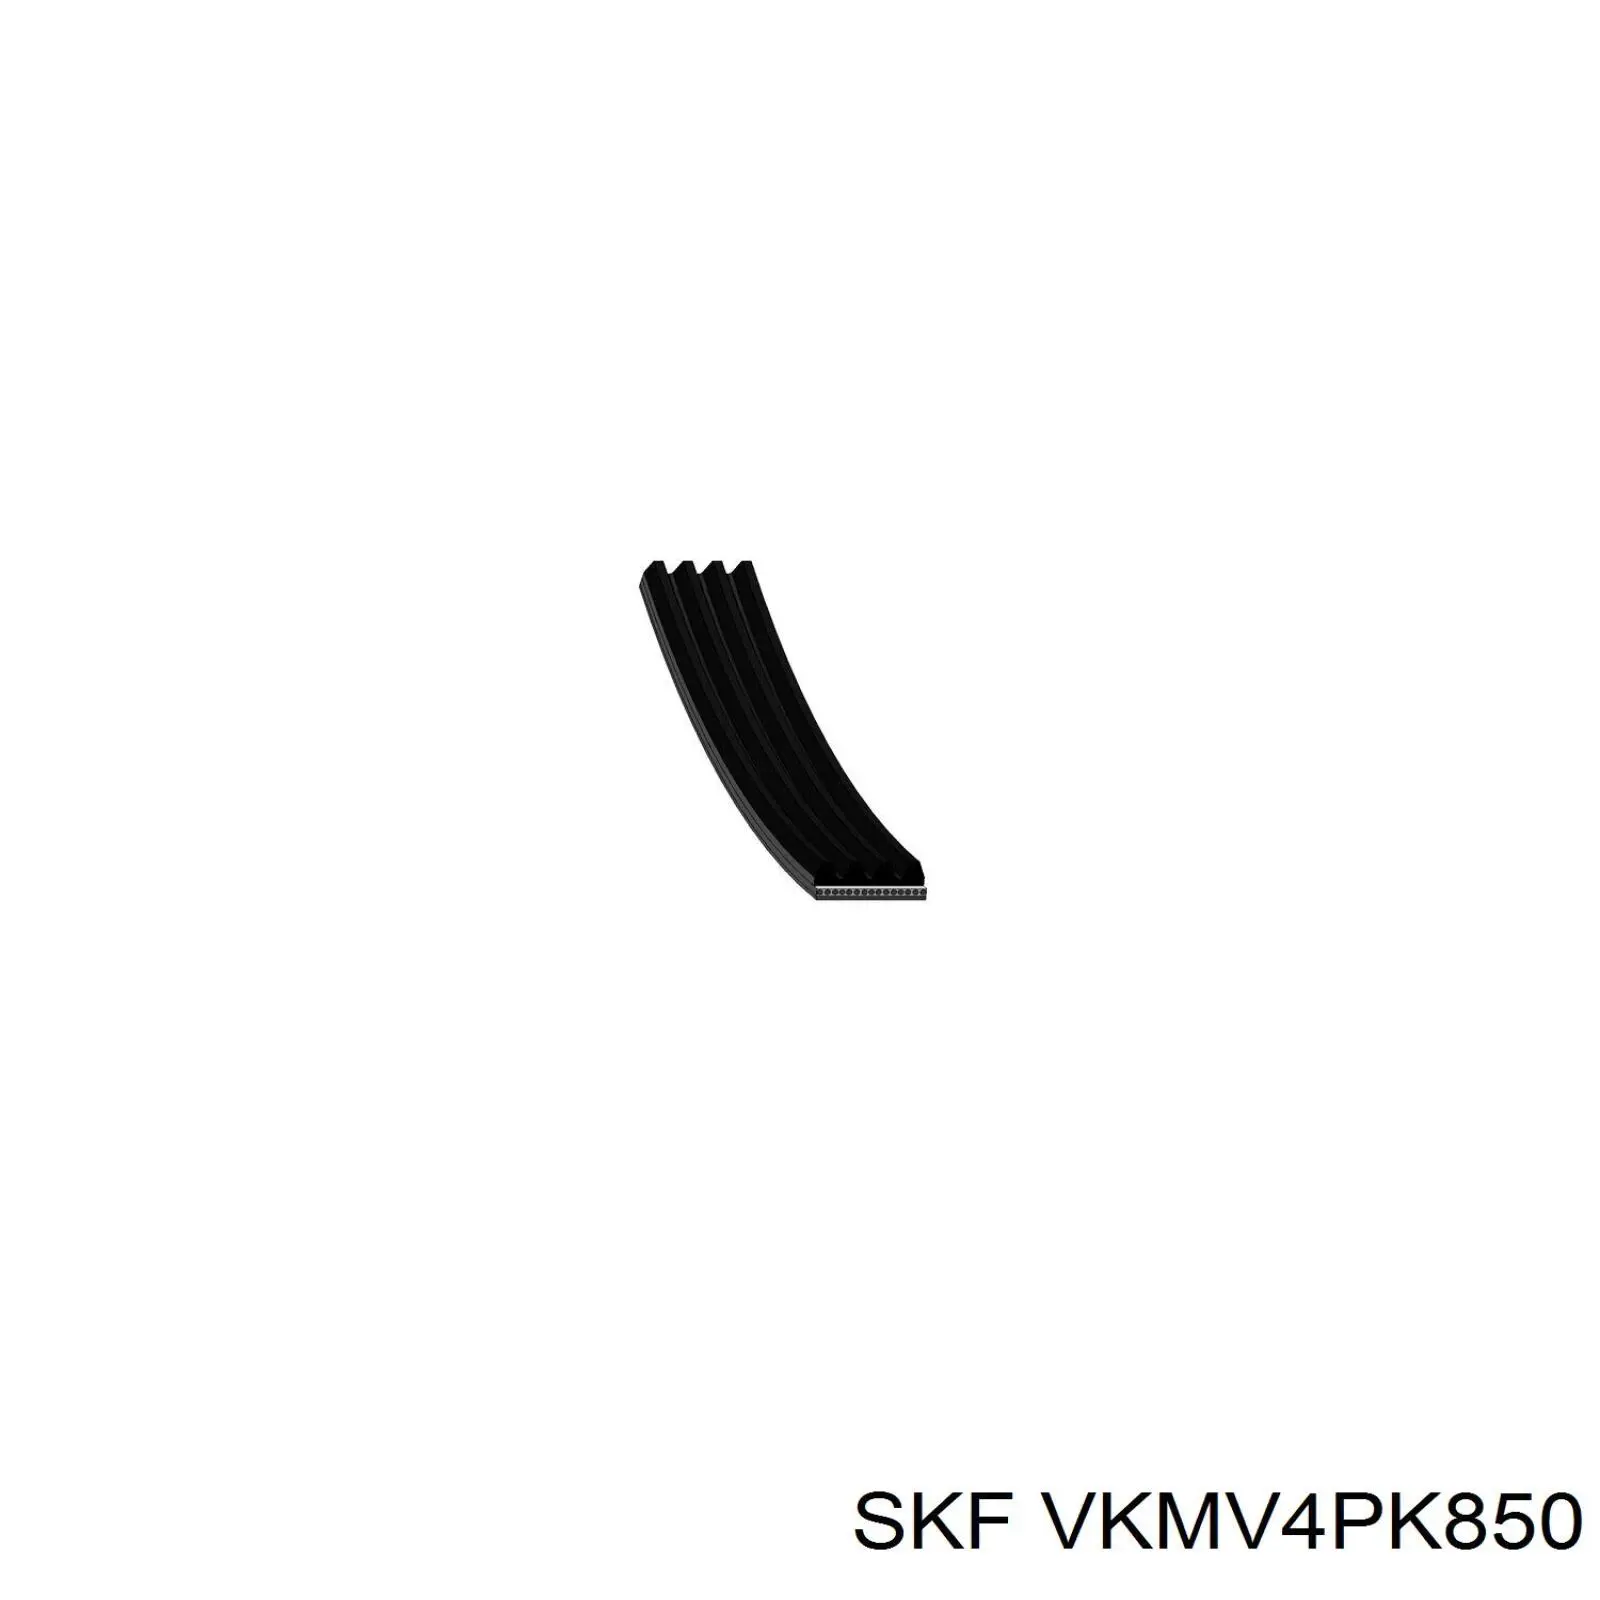 VKMV4PK850 SKF correa trapezoidal